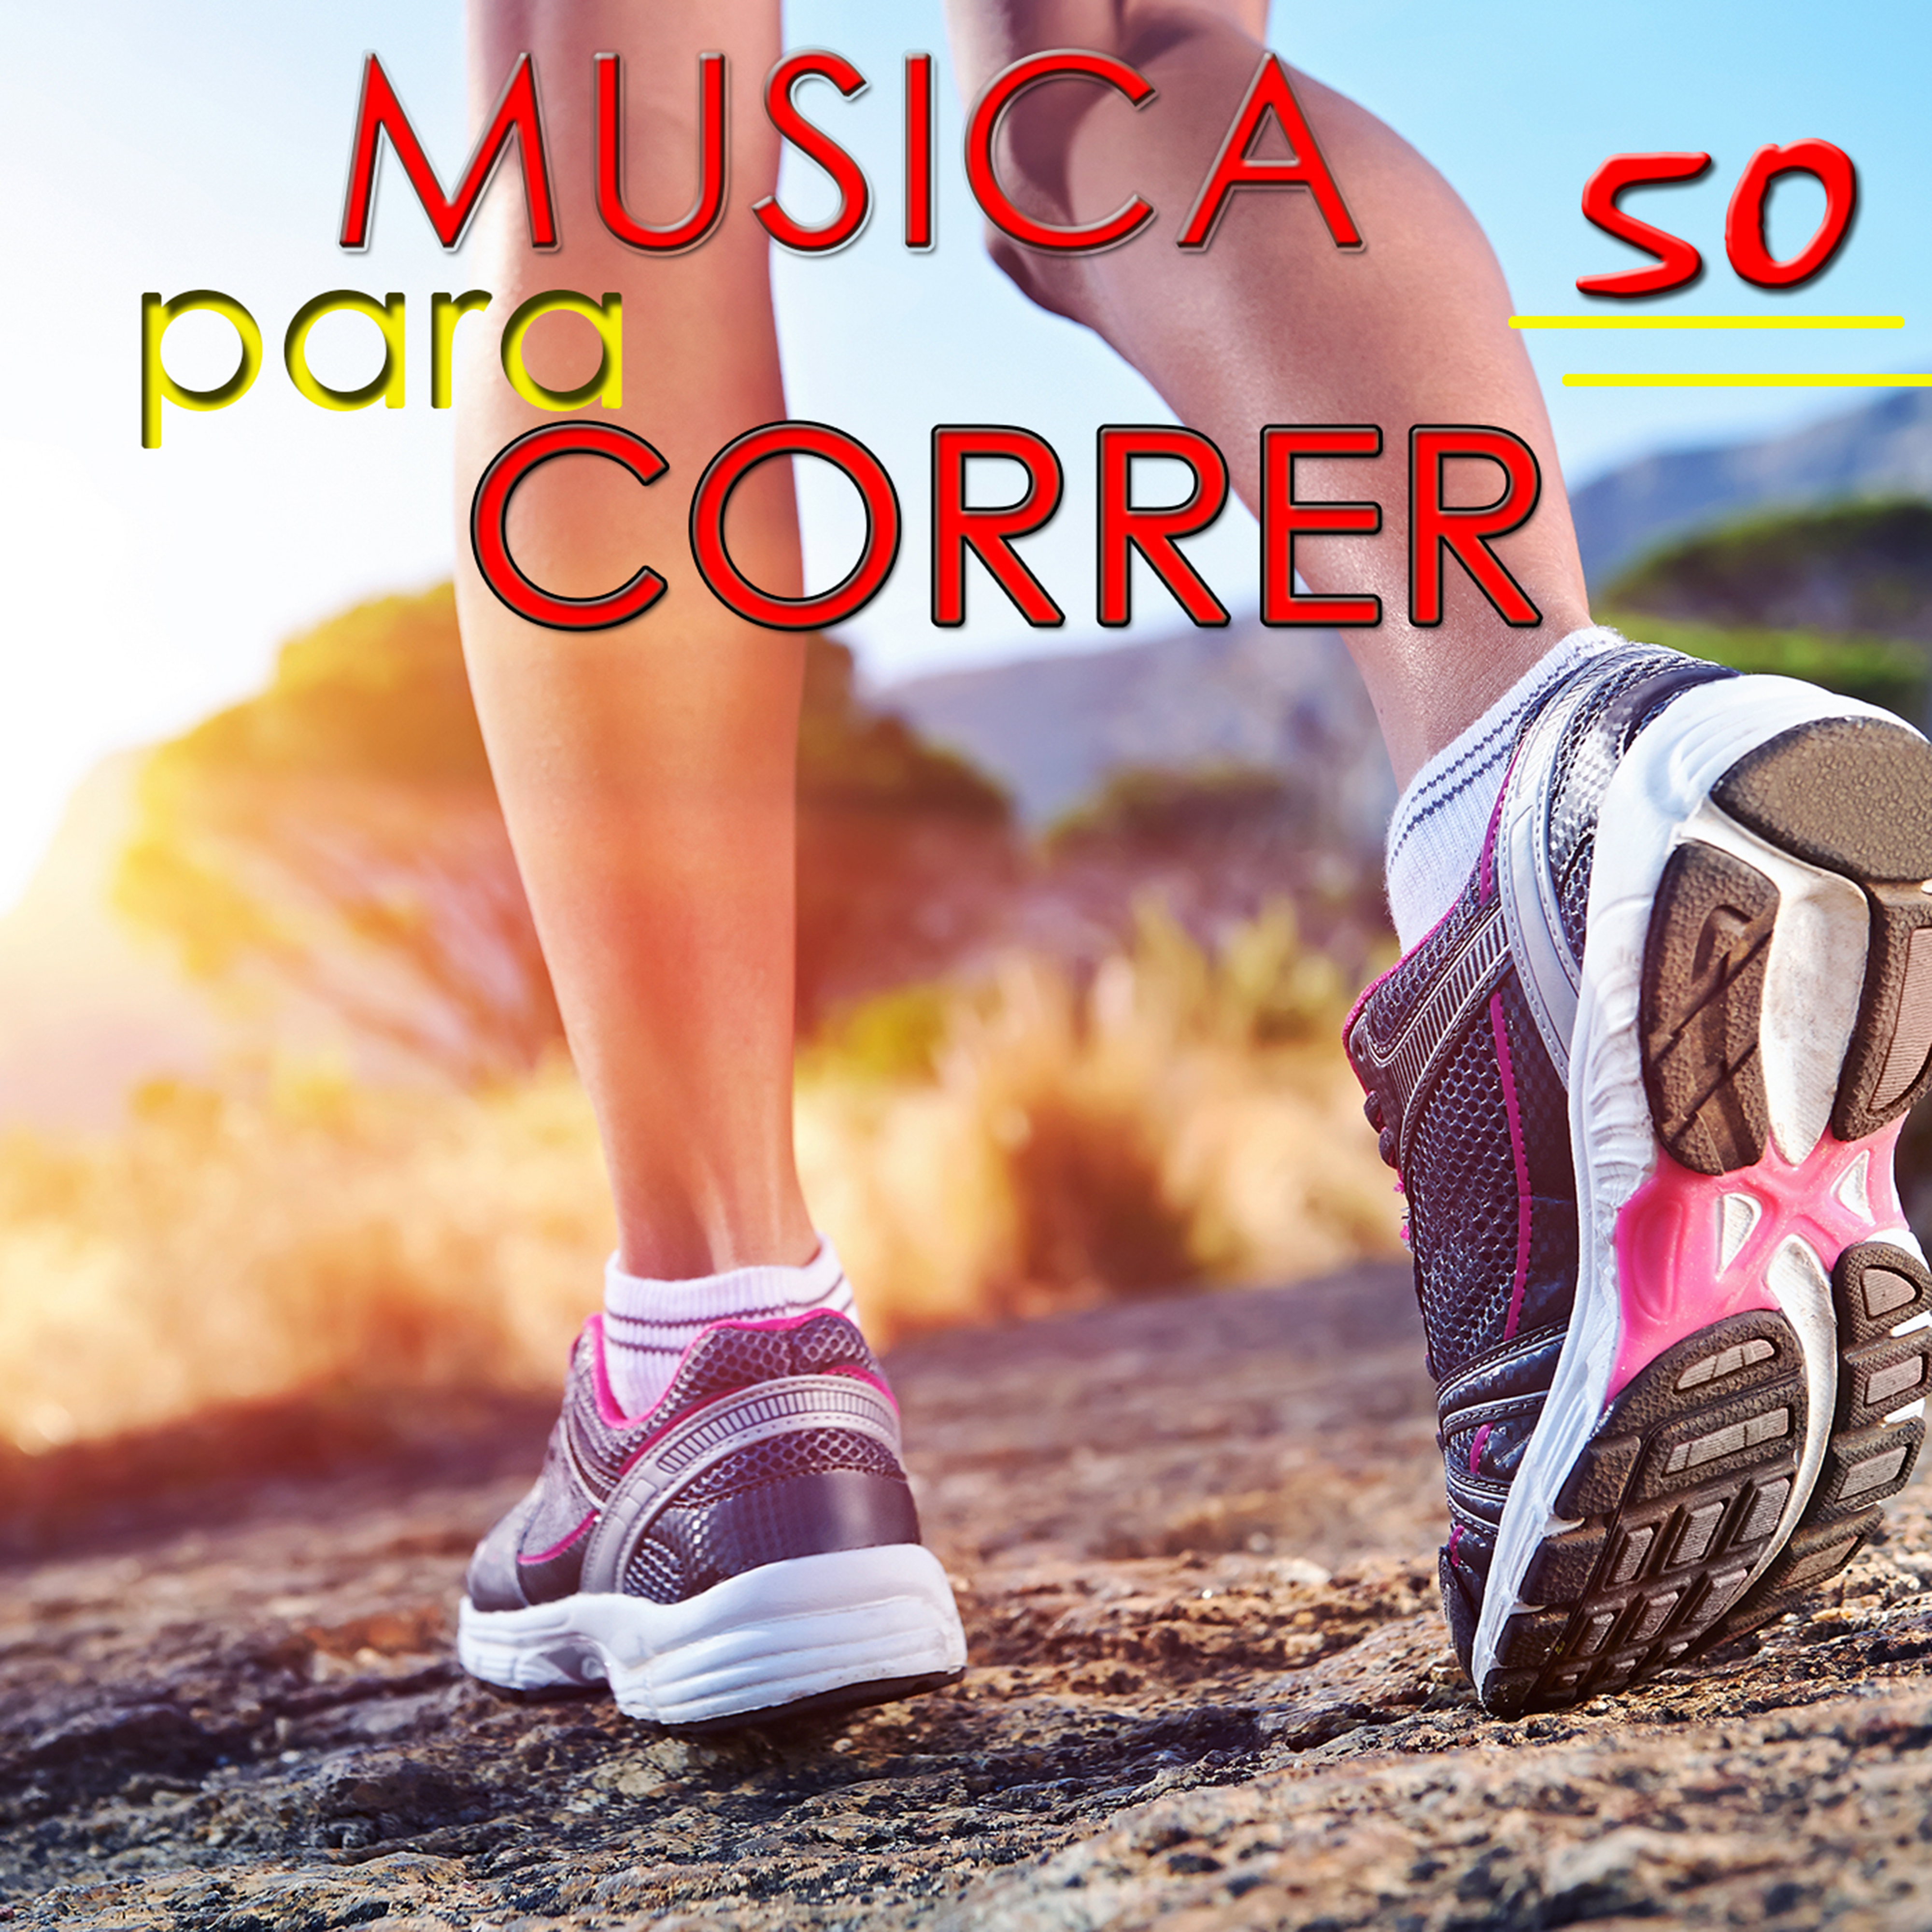 Musica para Correr 50 Top Hits Verano 2014 - Canciones para Correr, Aerobics, Cardio, Deporte, Fitnes y Bienestar